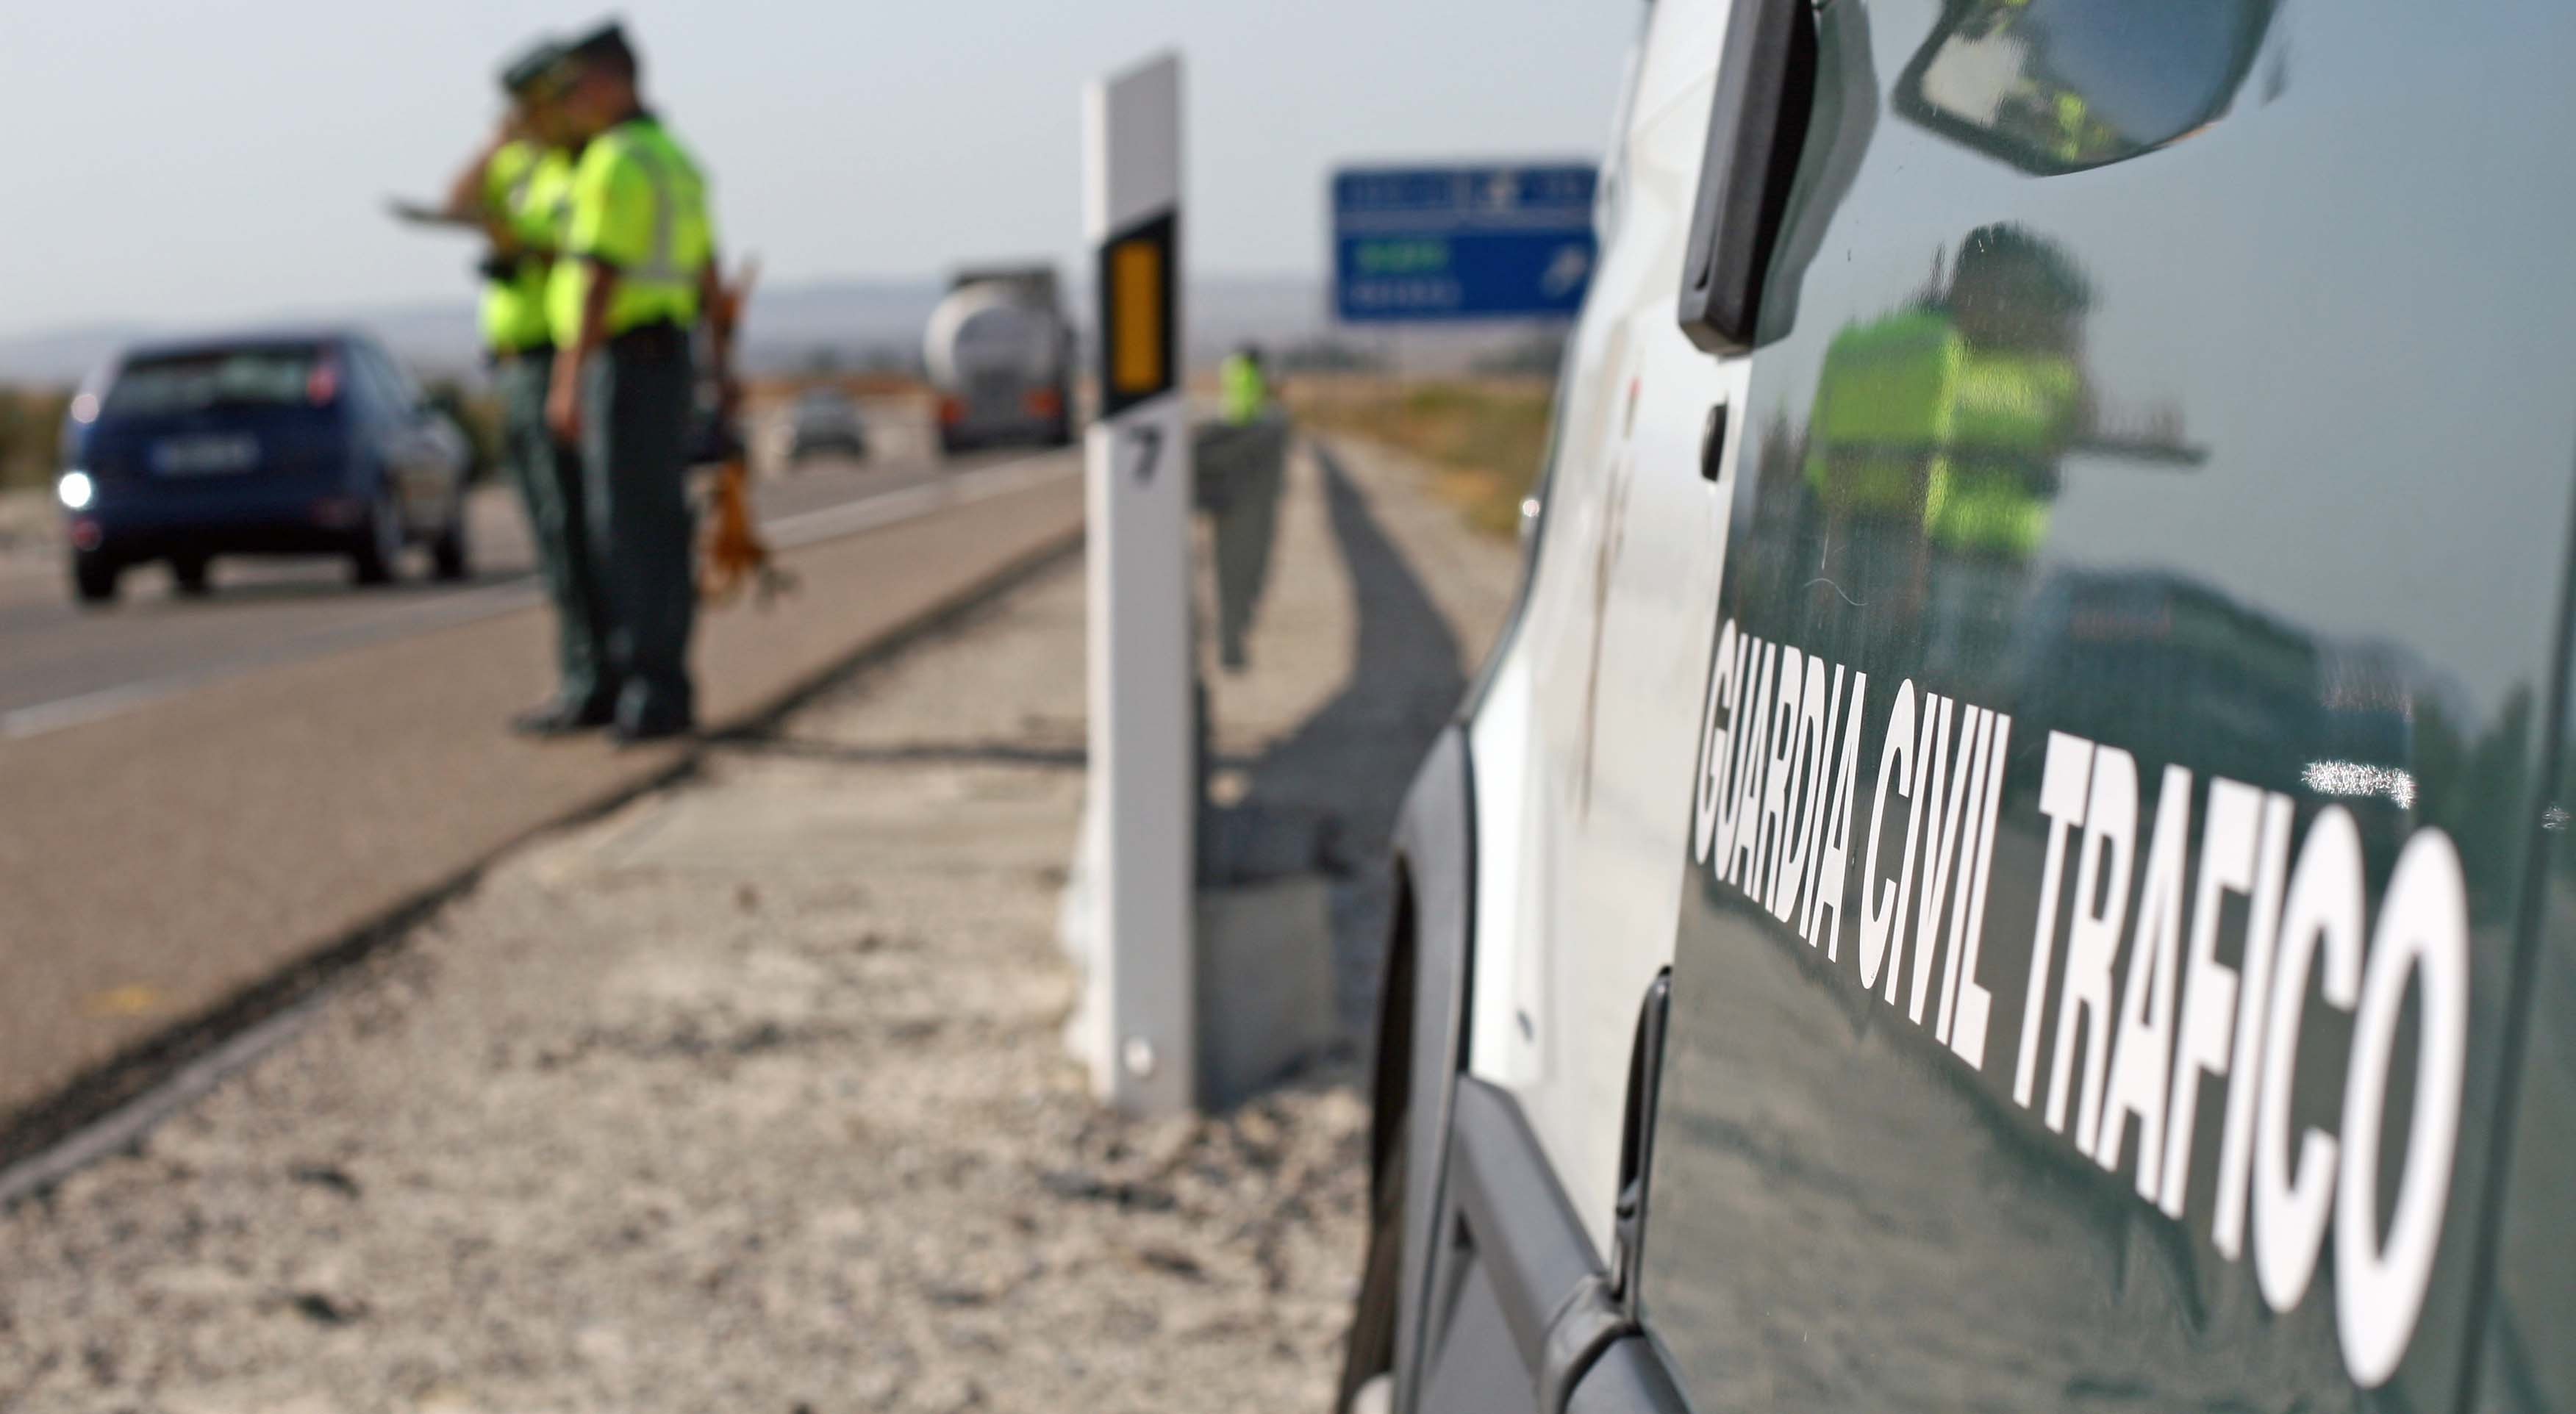 La Guardia Civil detecta un vehículo a 182 km/h en una zona limitada a 80 km/h